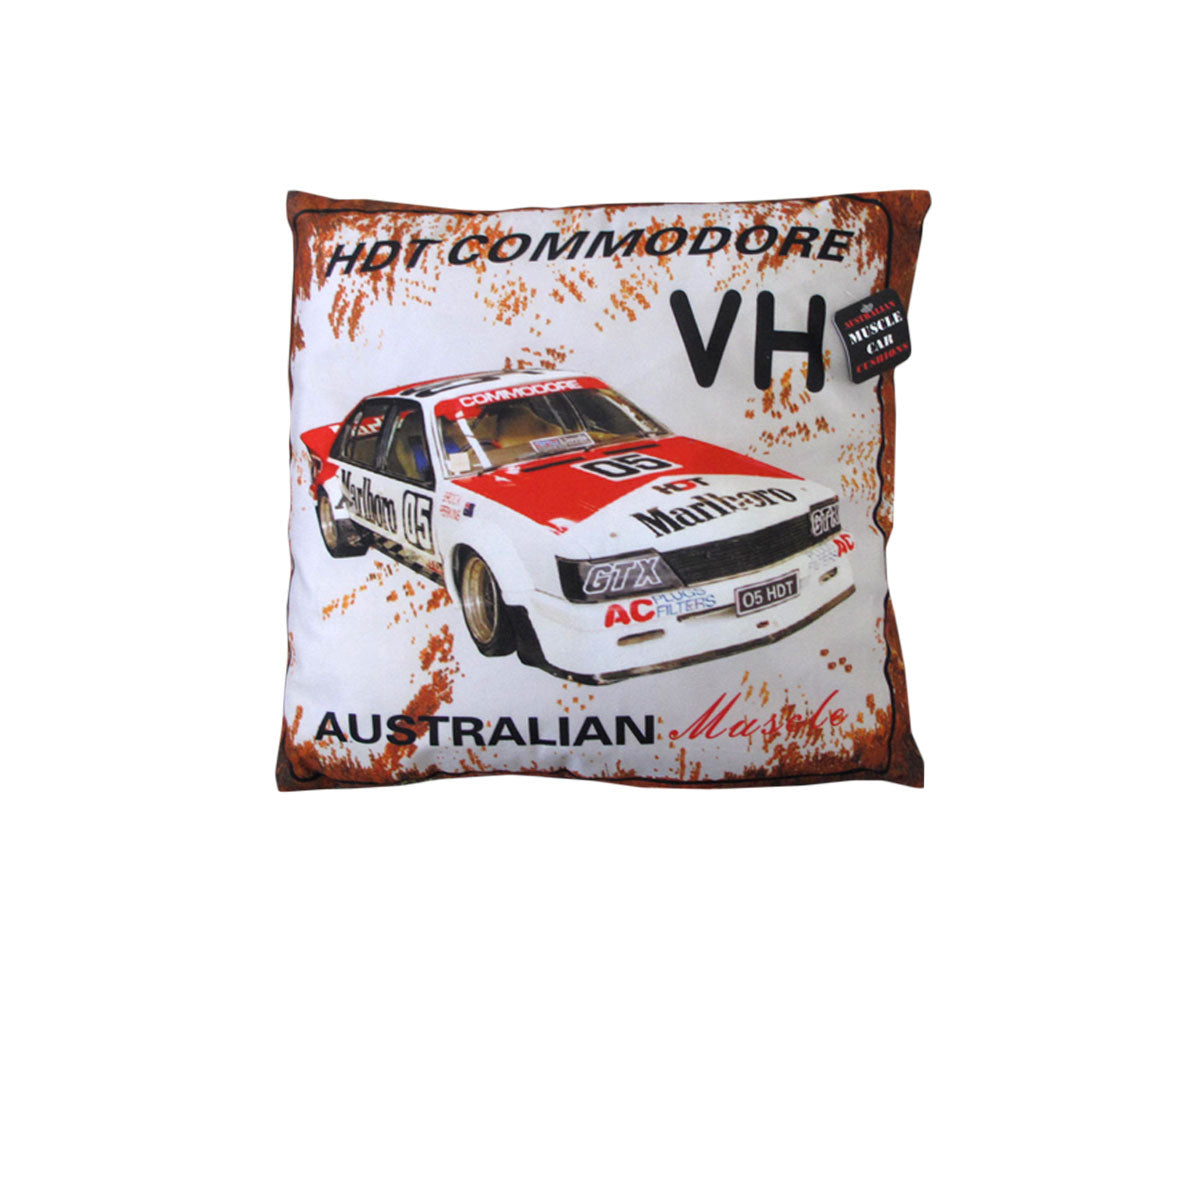 Australian Muscle Car Cushion VH HDT Comodore Red